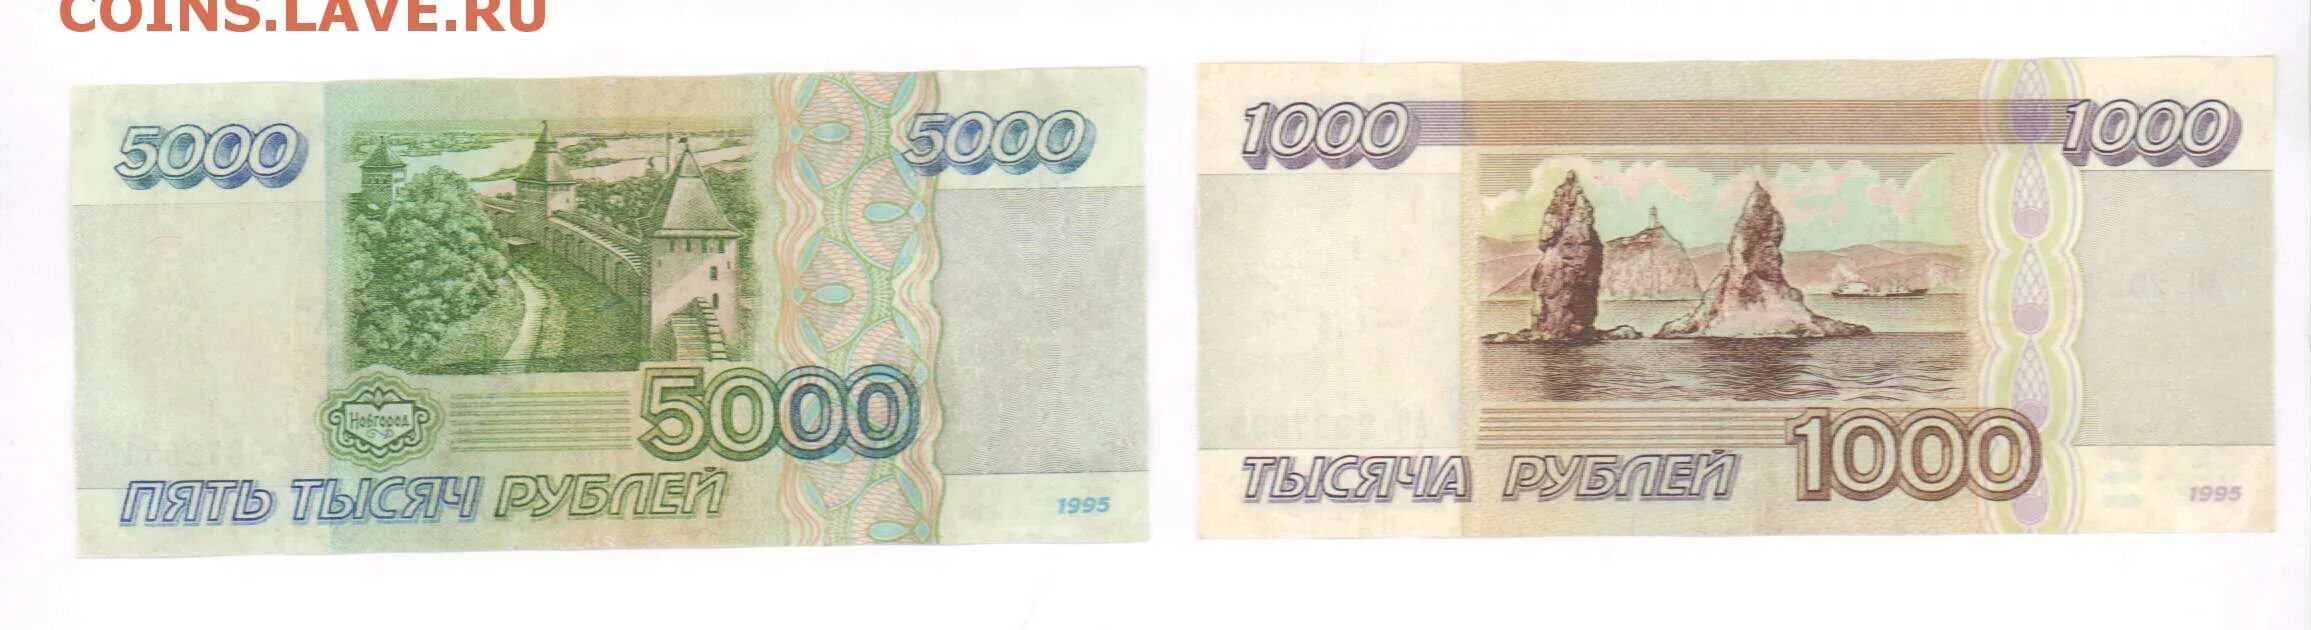 5000 Рублей 1995 года. 5000 Тысяч 1995. 1000 Рублей реверс. 5000 И 1000 рублей 1995 года. 5000 рублей 1995